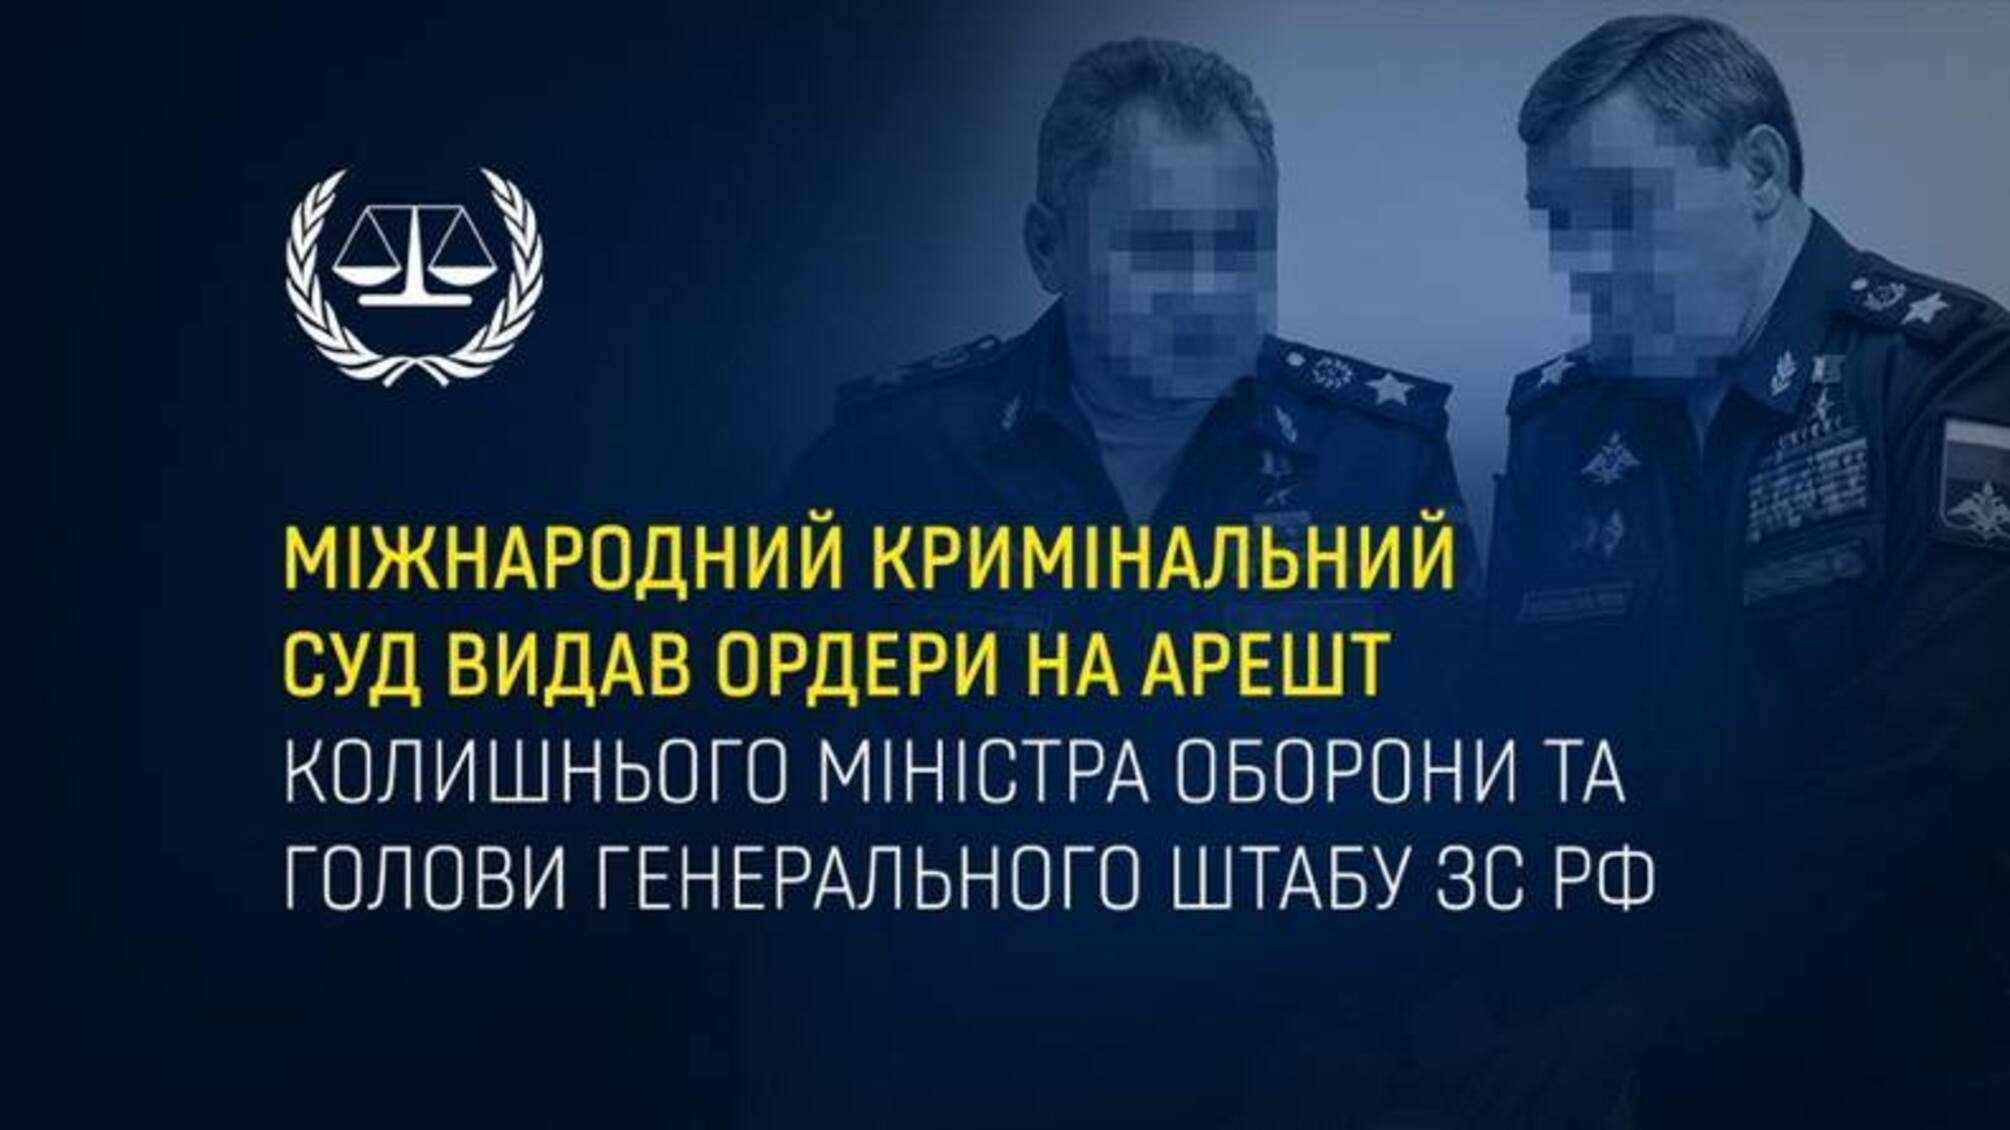 Услід за путіним: МКС видав ордери на арешт Шойгу та Герасимова 